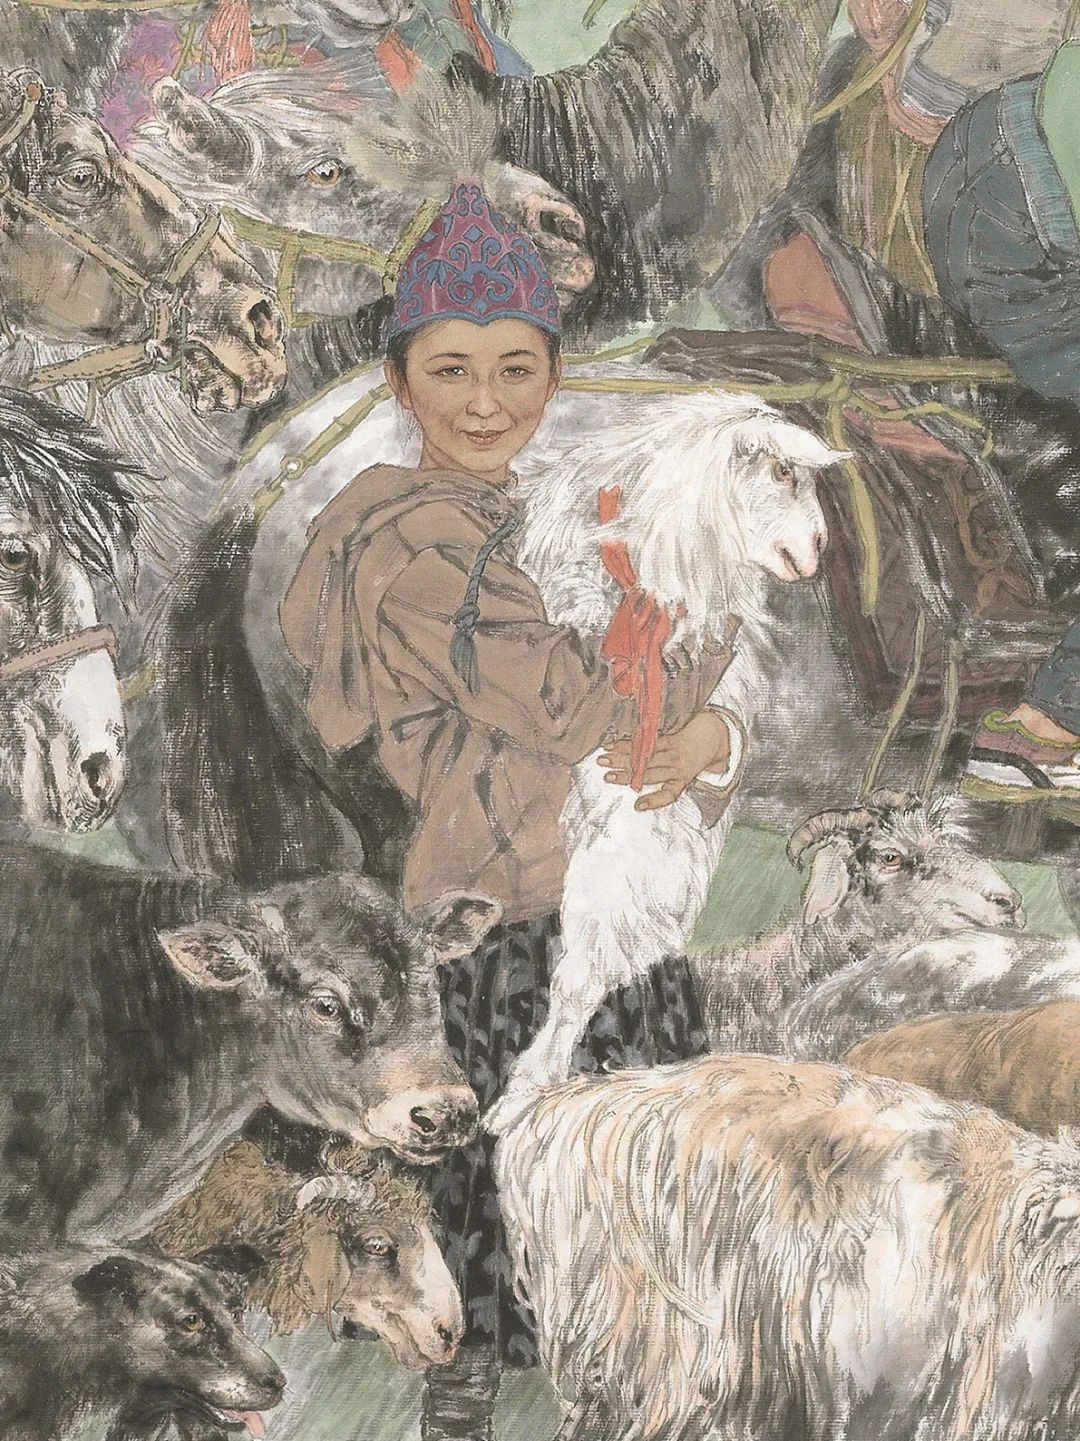 为最后一支游牧民族喝彩——著名画家于文江解读作品《哈萨克迁徙—春的牧场》